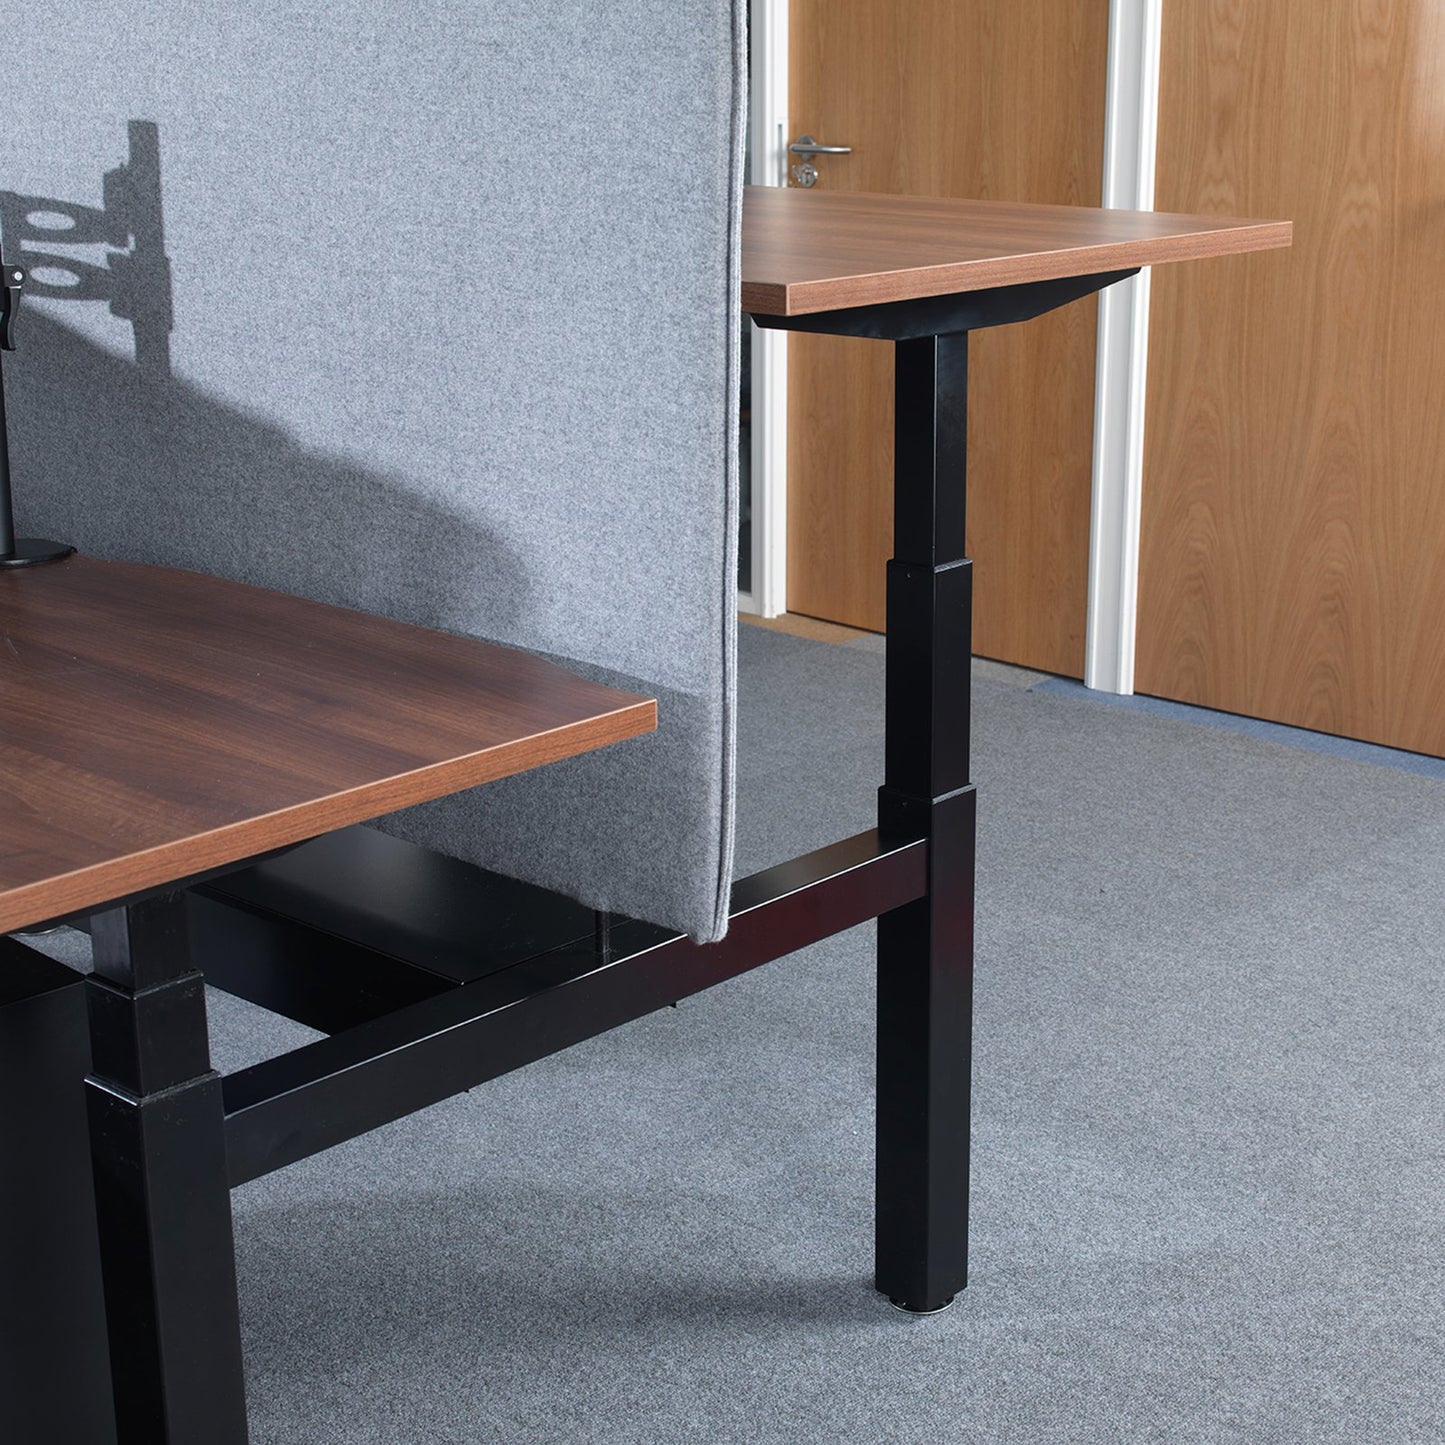 2 Persons - Elev8 Electric Height Adjustable Back-To-Back Desks 160cm wide